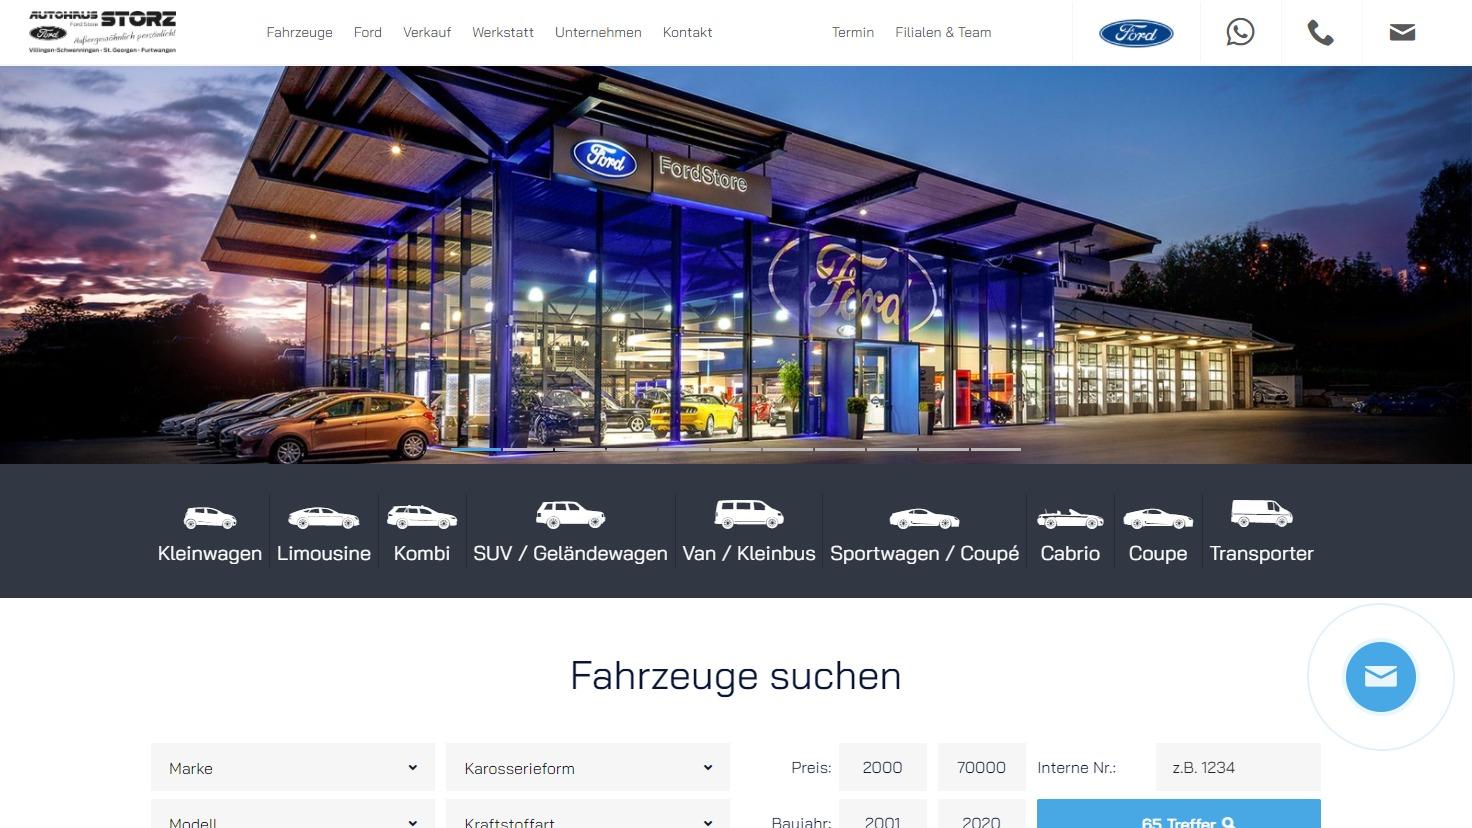 Ford Autohaus Storz - Ford Verkauf und Service in Villingen-Schwenningen, St. Georgen und Furtwangen